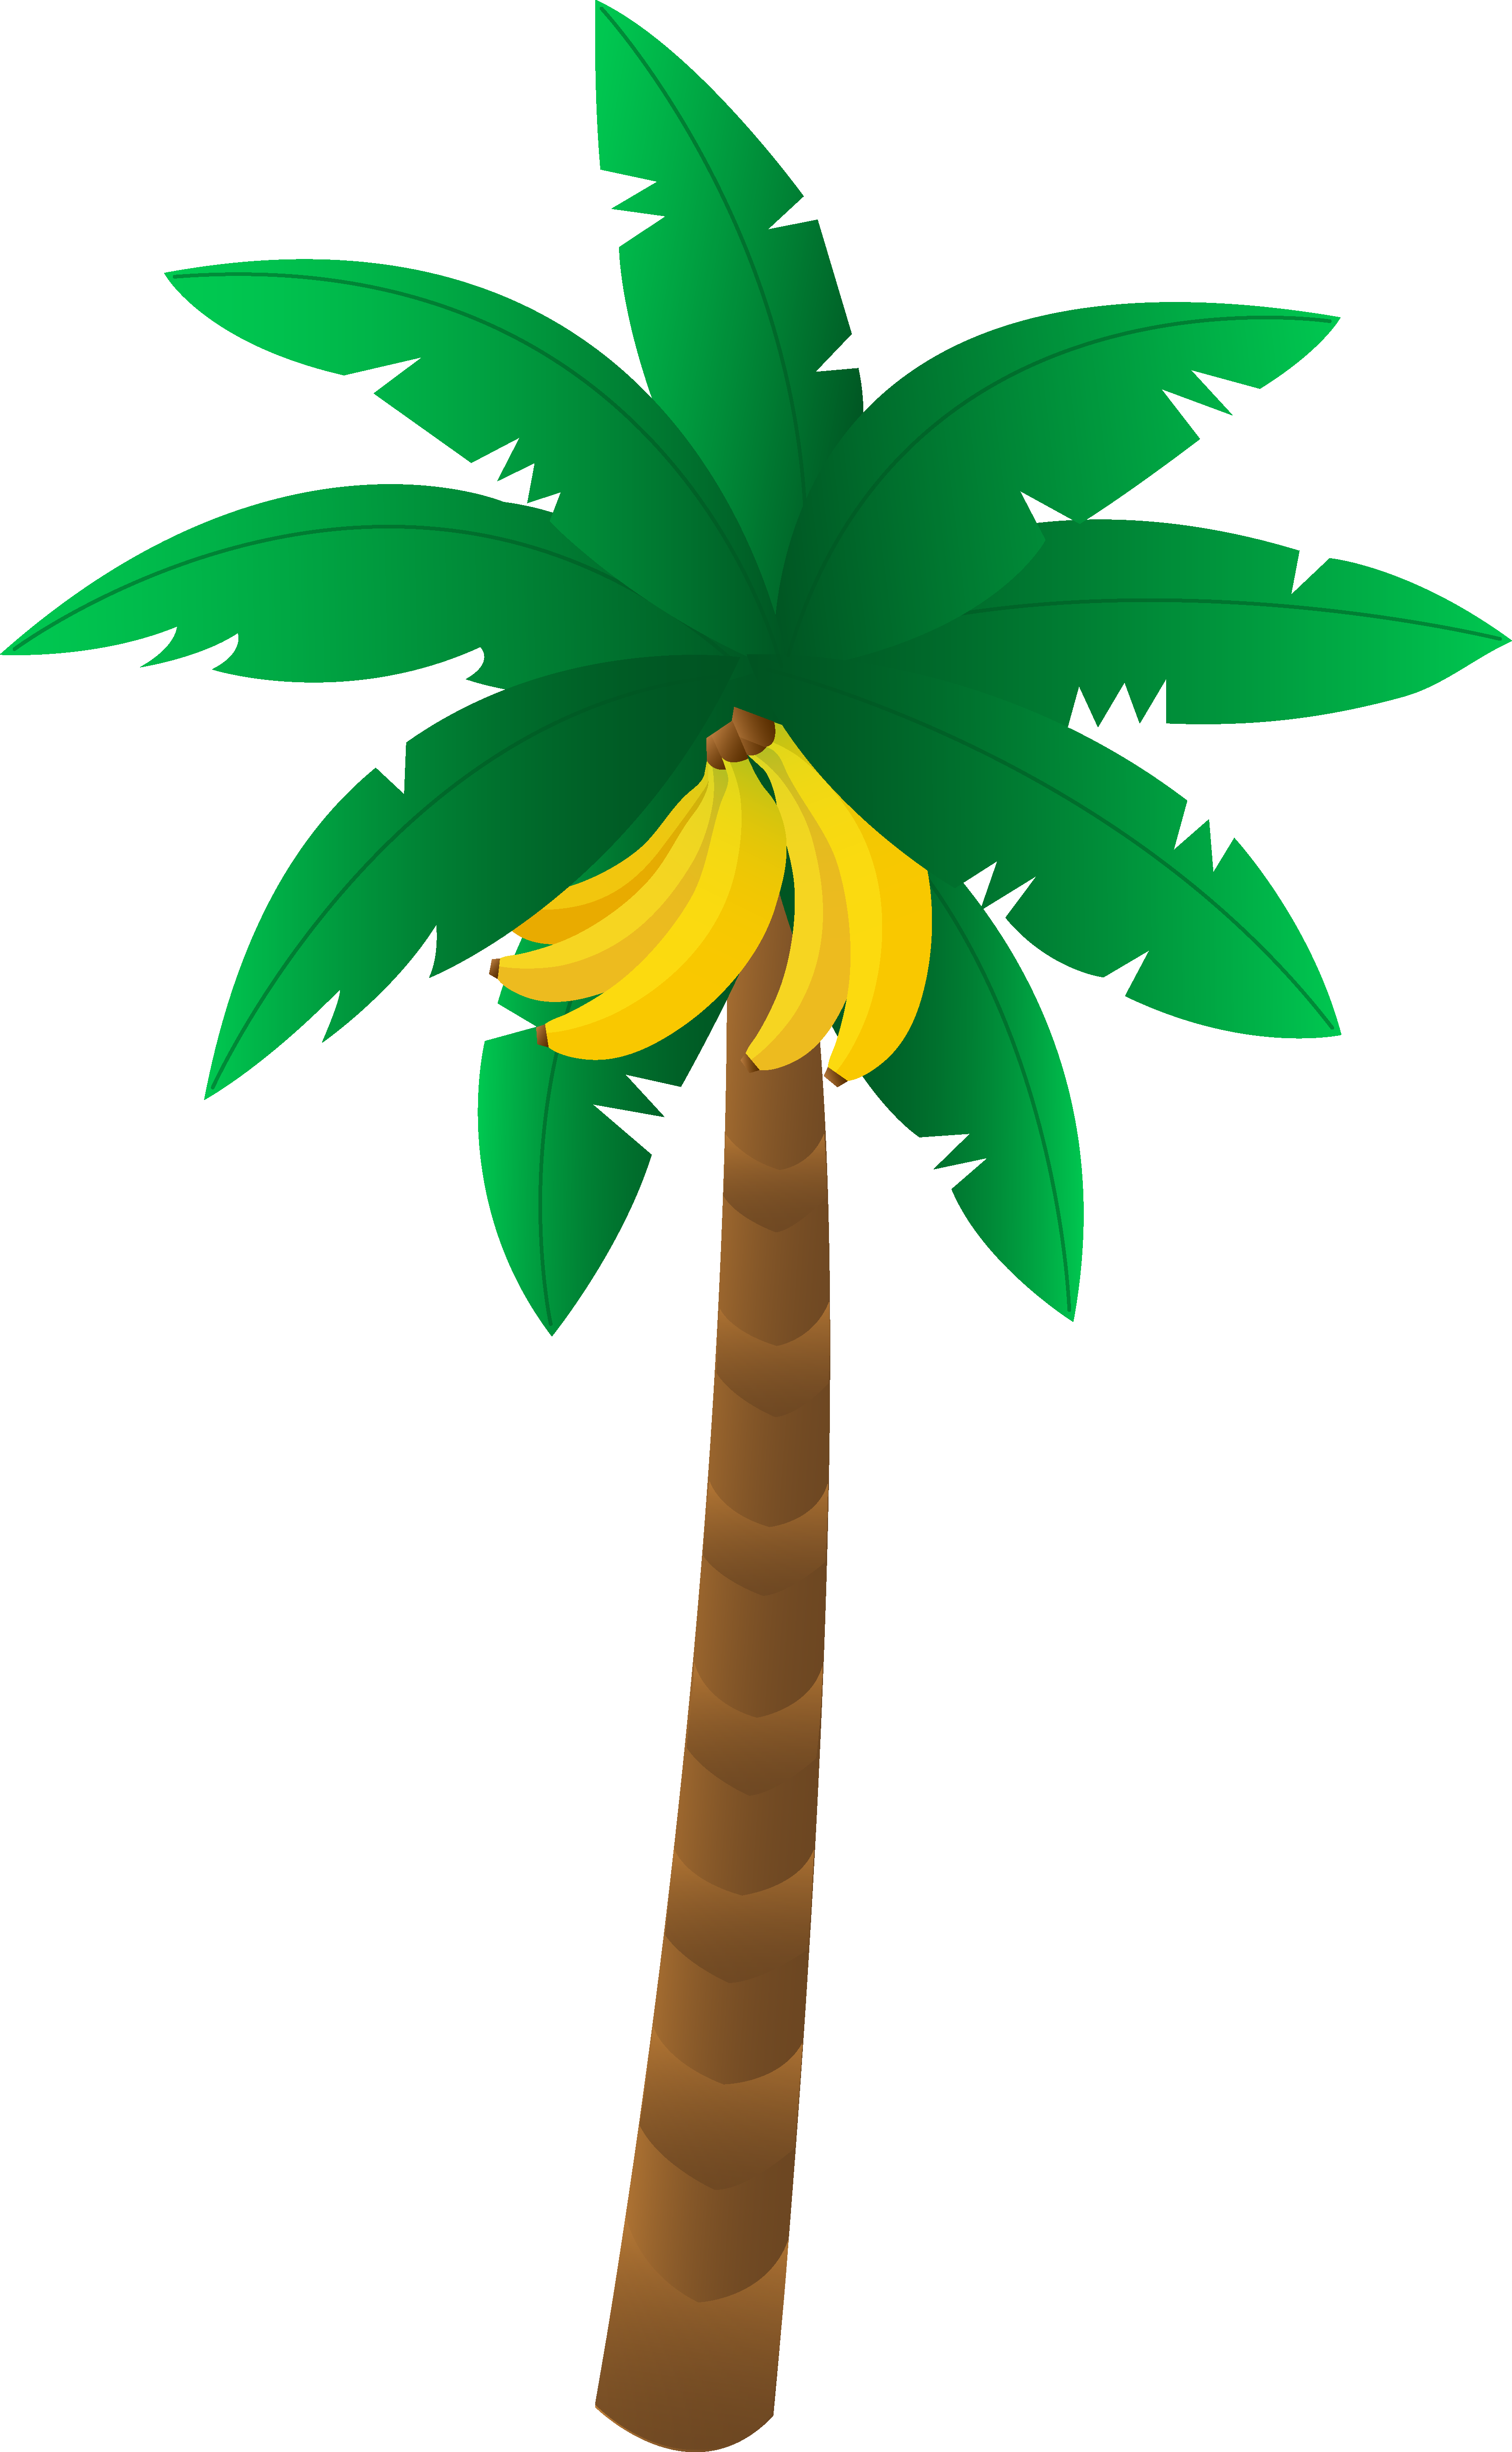 Island clipart small island. Banana tree free 